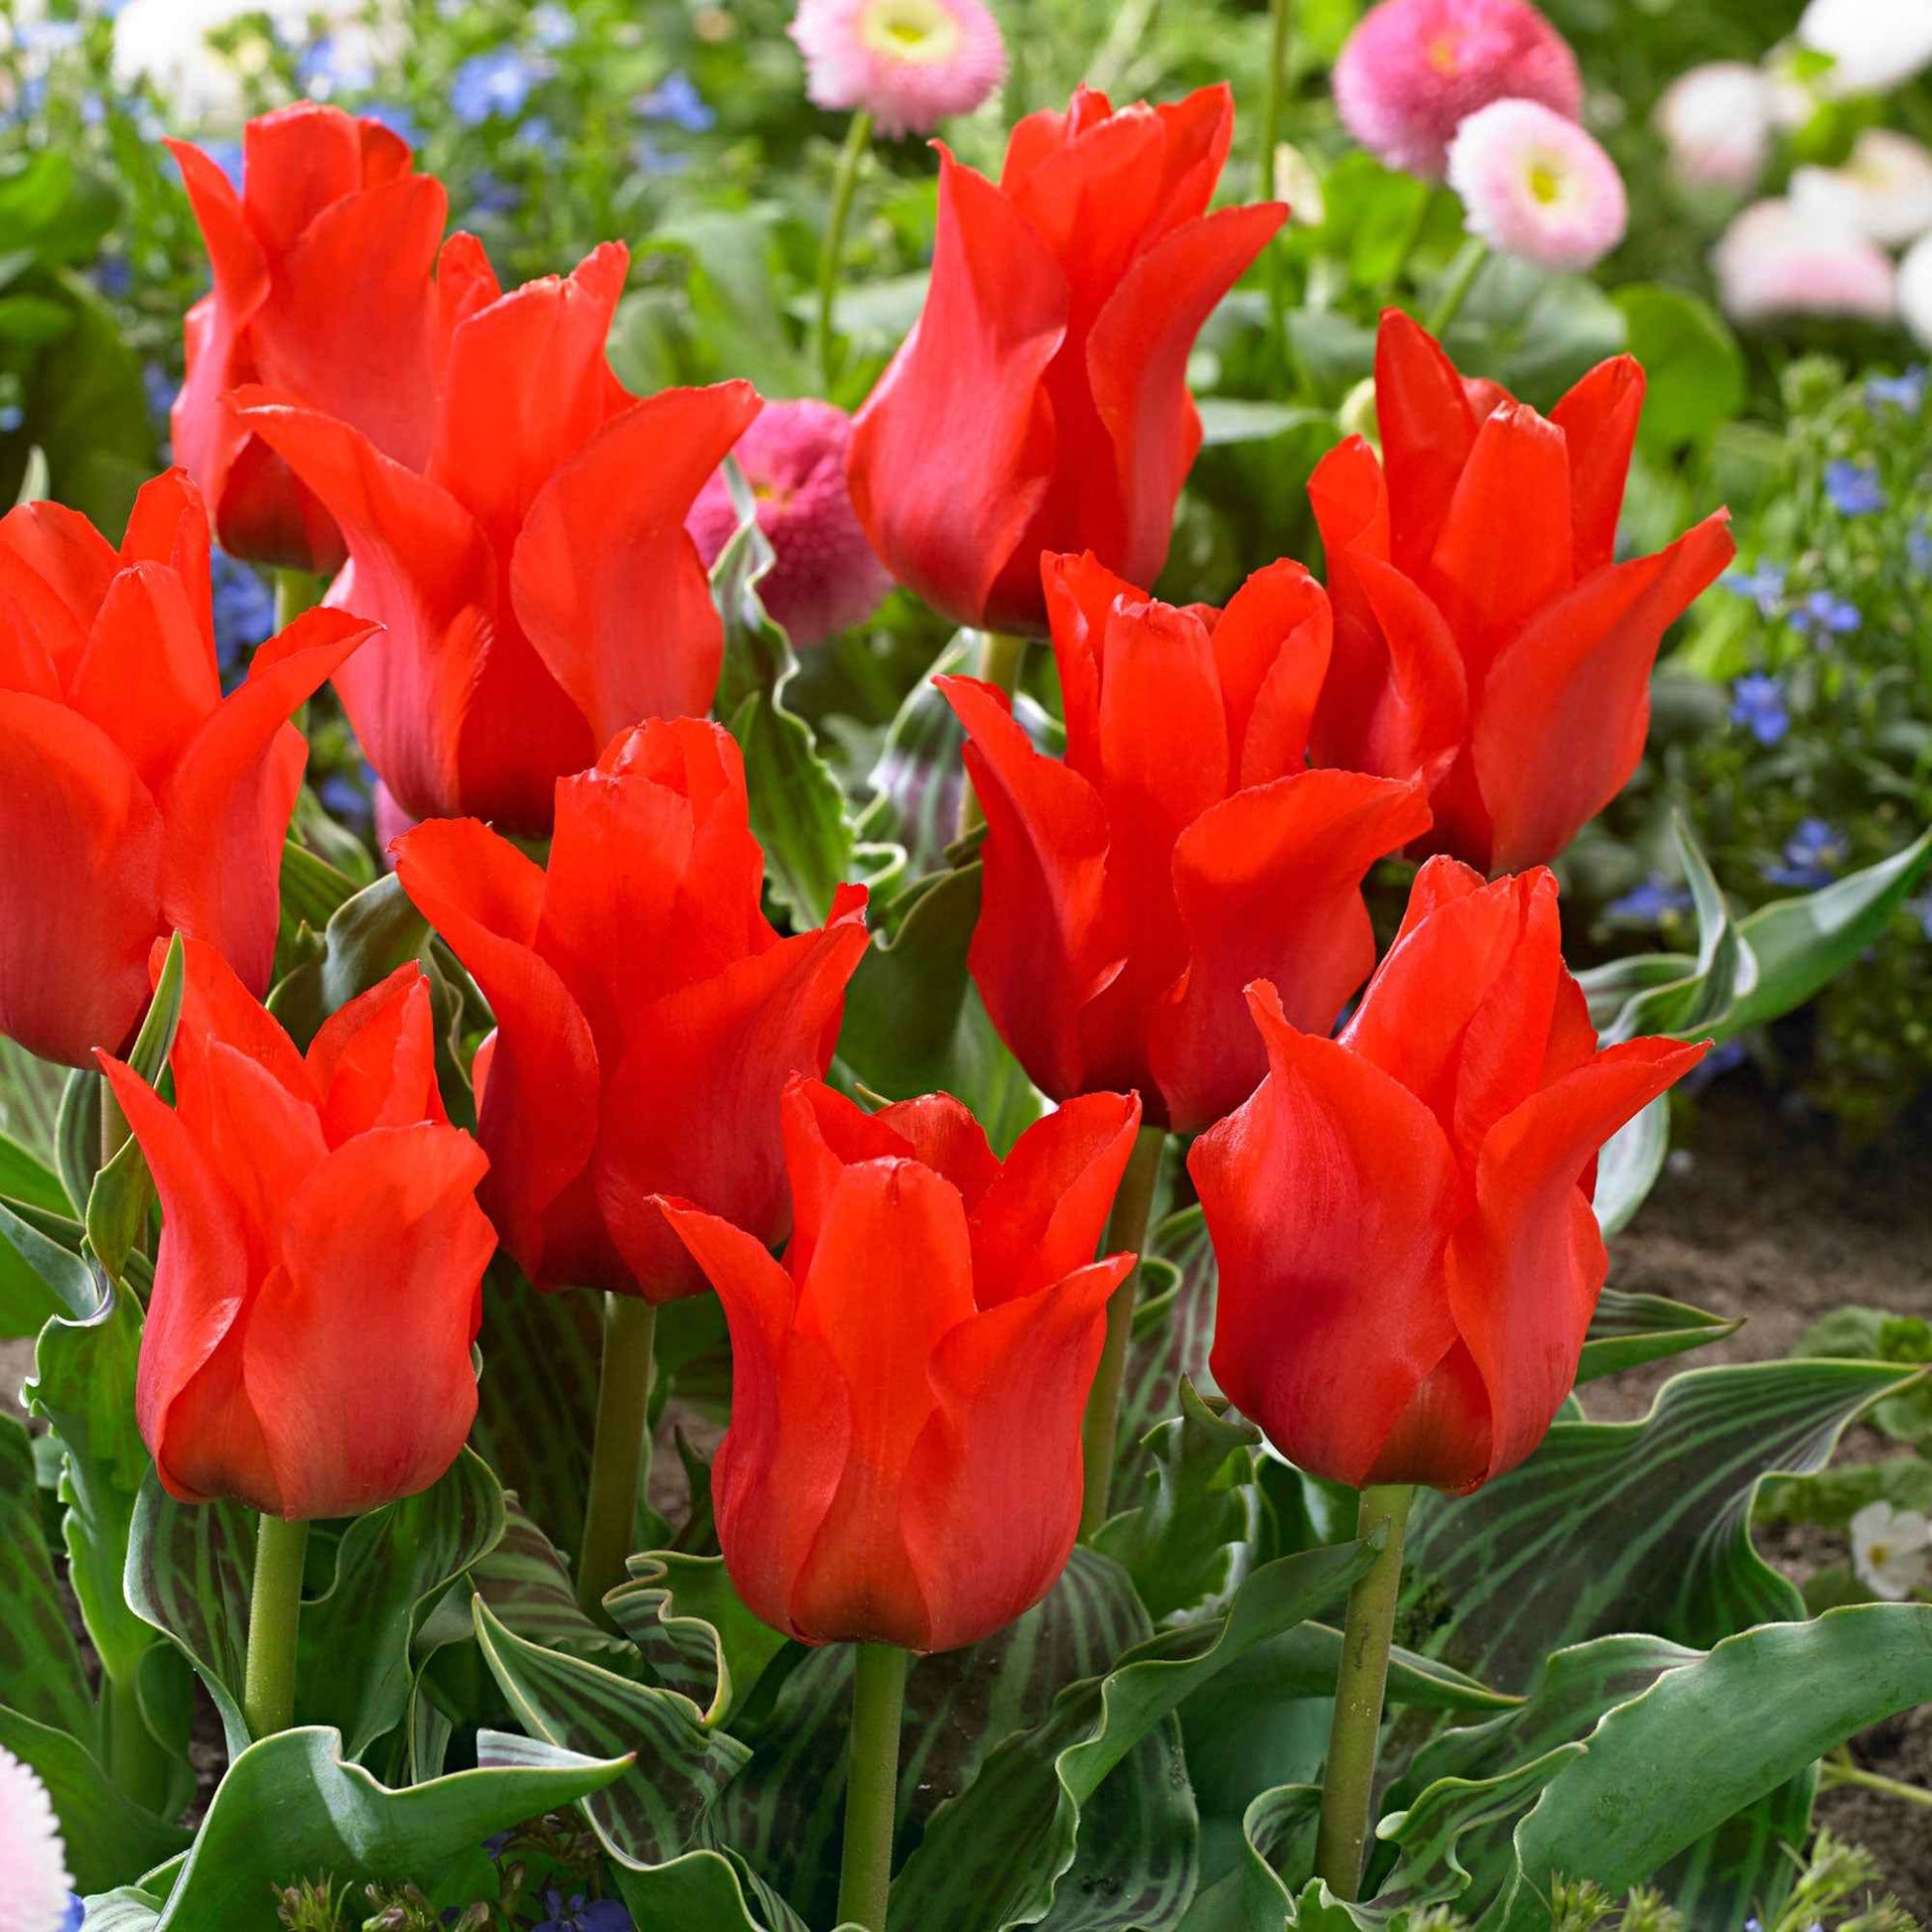 20x Tulpen Tulipa 'Oriental Beauty' rot - Blumenzwiebeln Frühlingsblüher